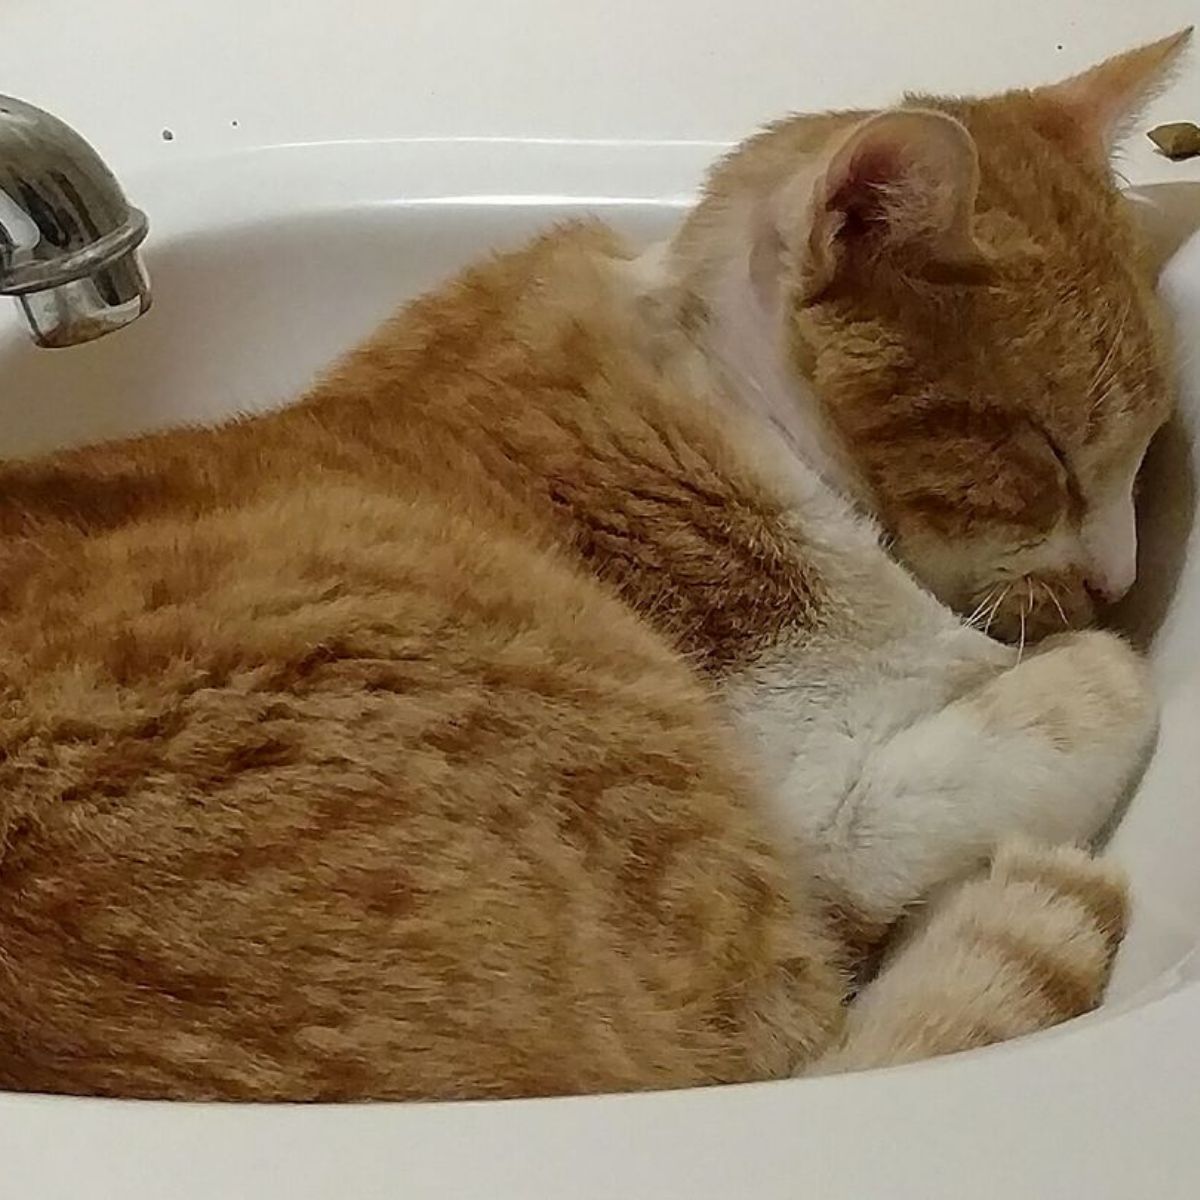 cat sleeps in a sink